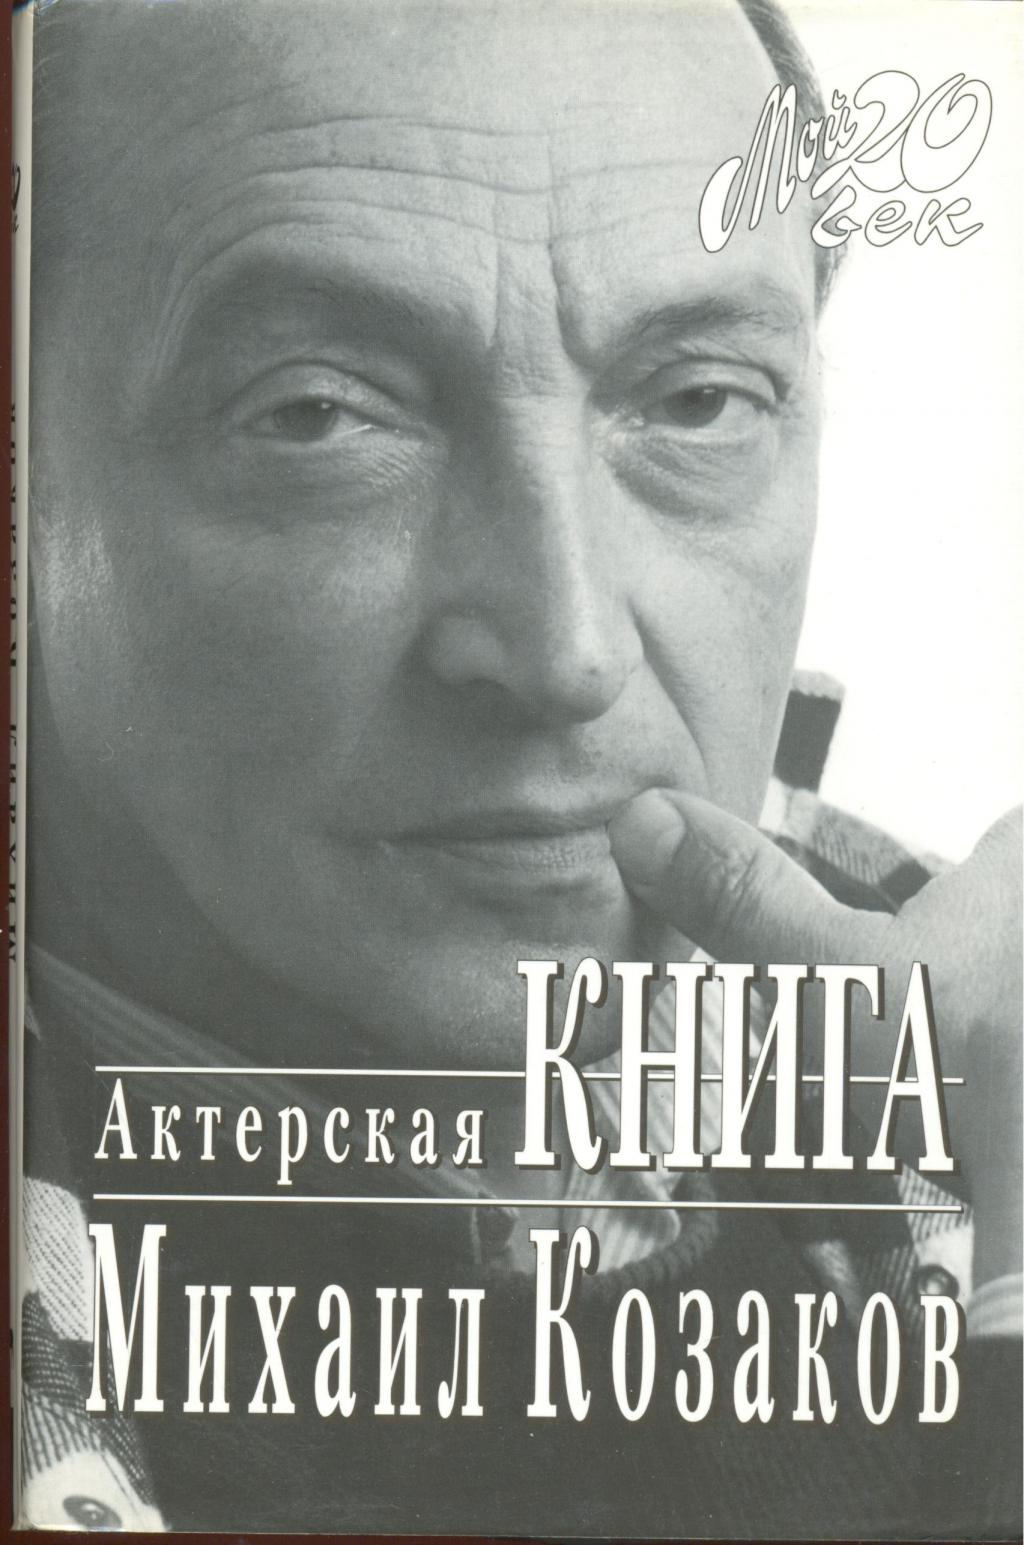 Козаков михаил актерская книга скачать